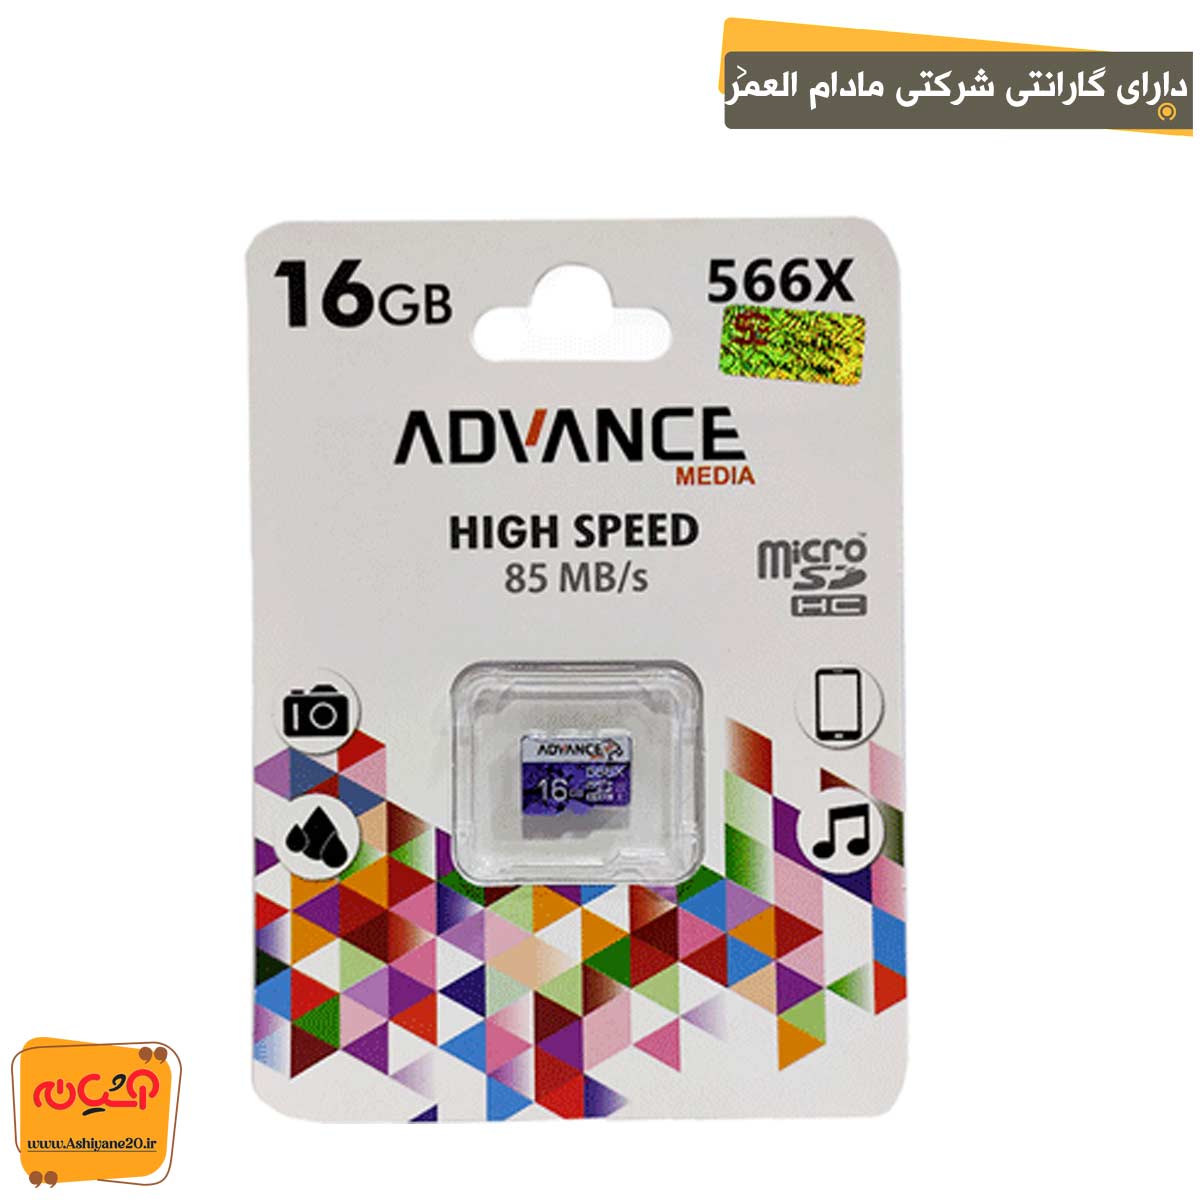 مموری Micro Advance 566x 16GB